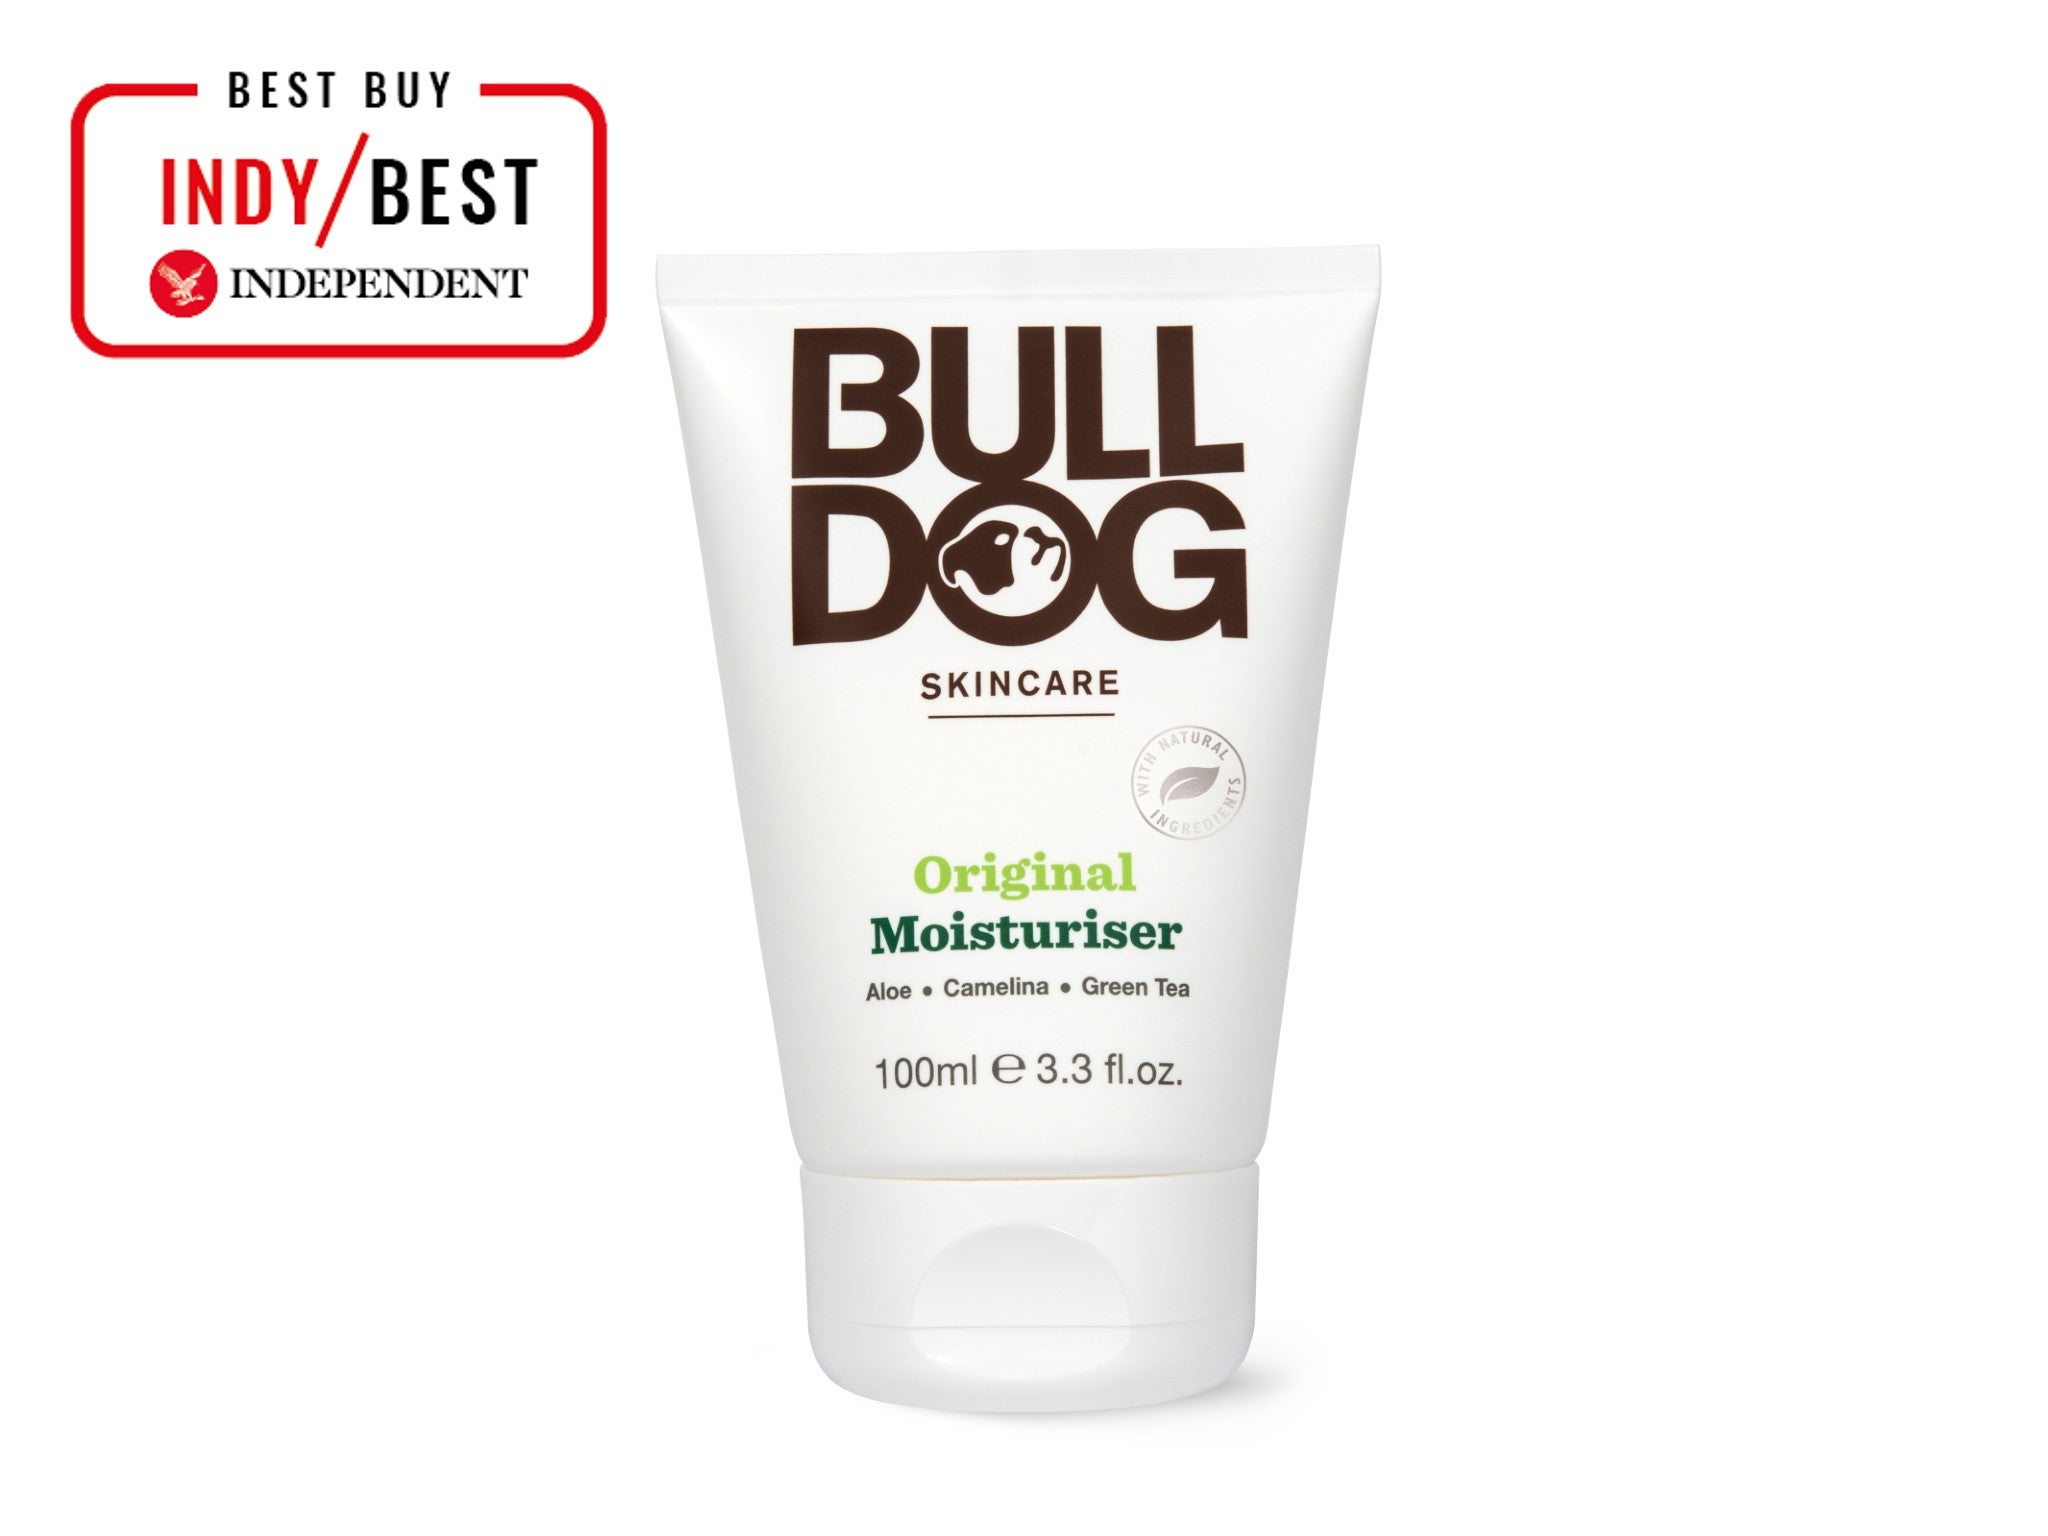 Bulldog original moisturiser indybest